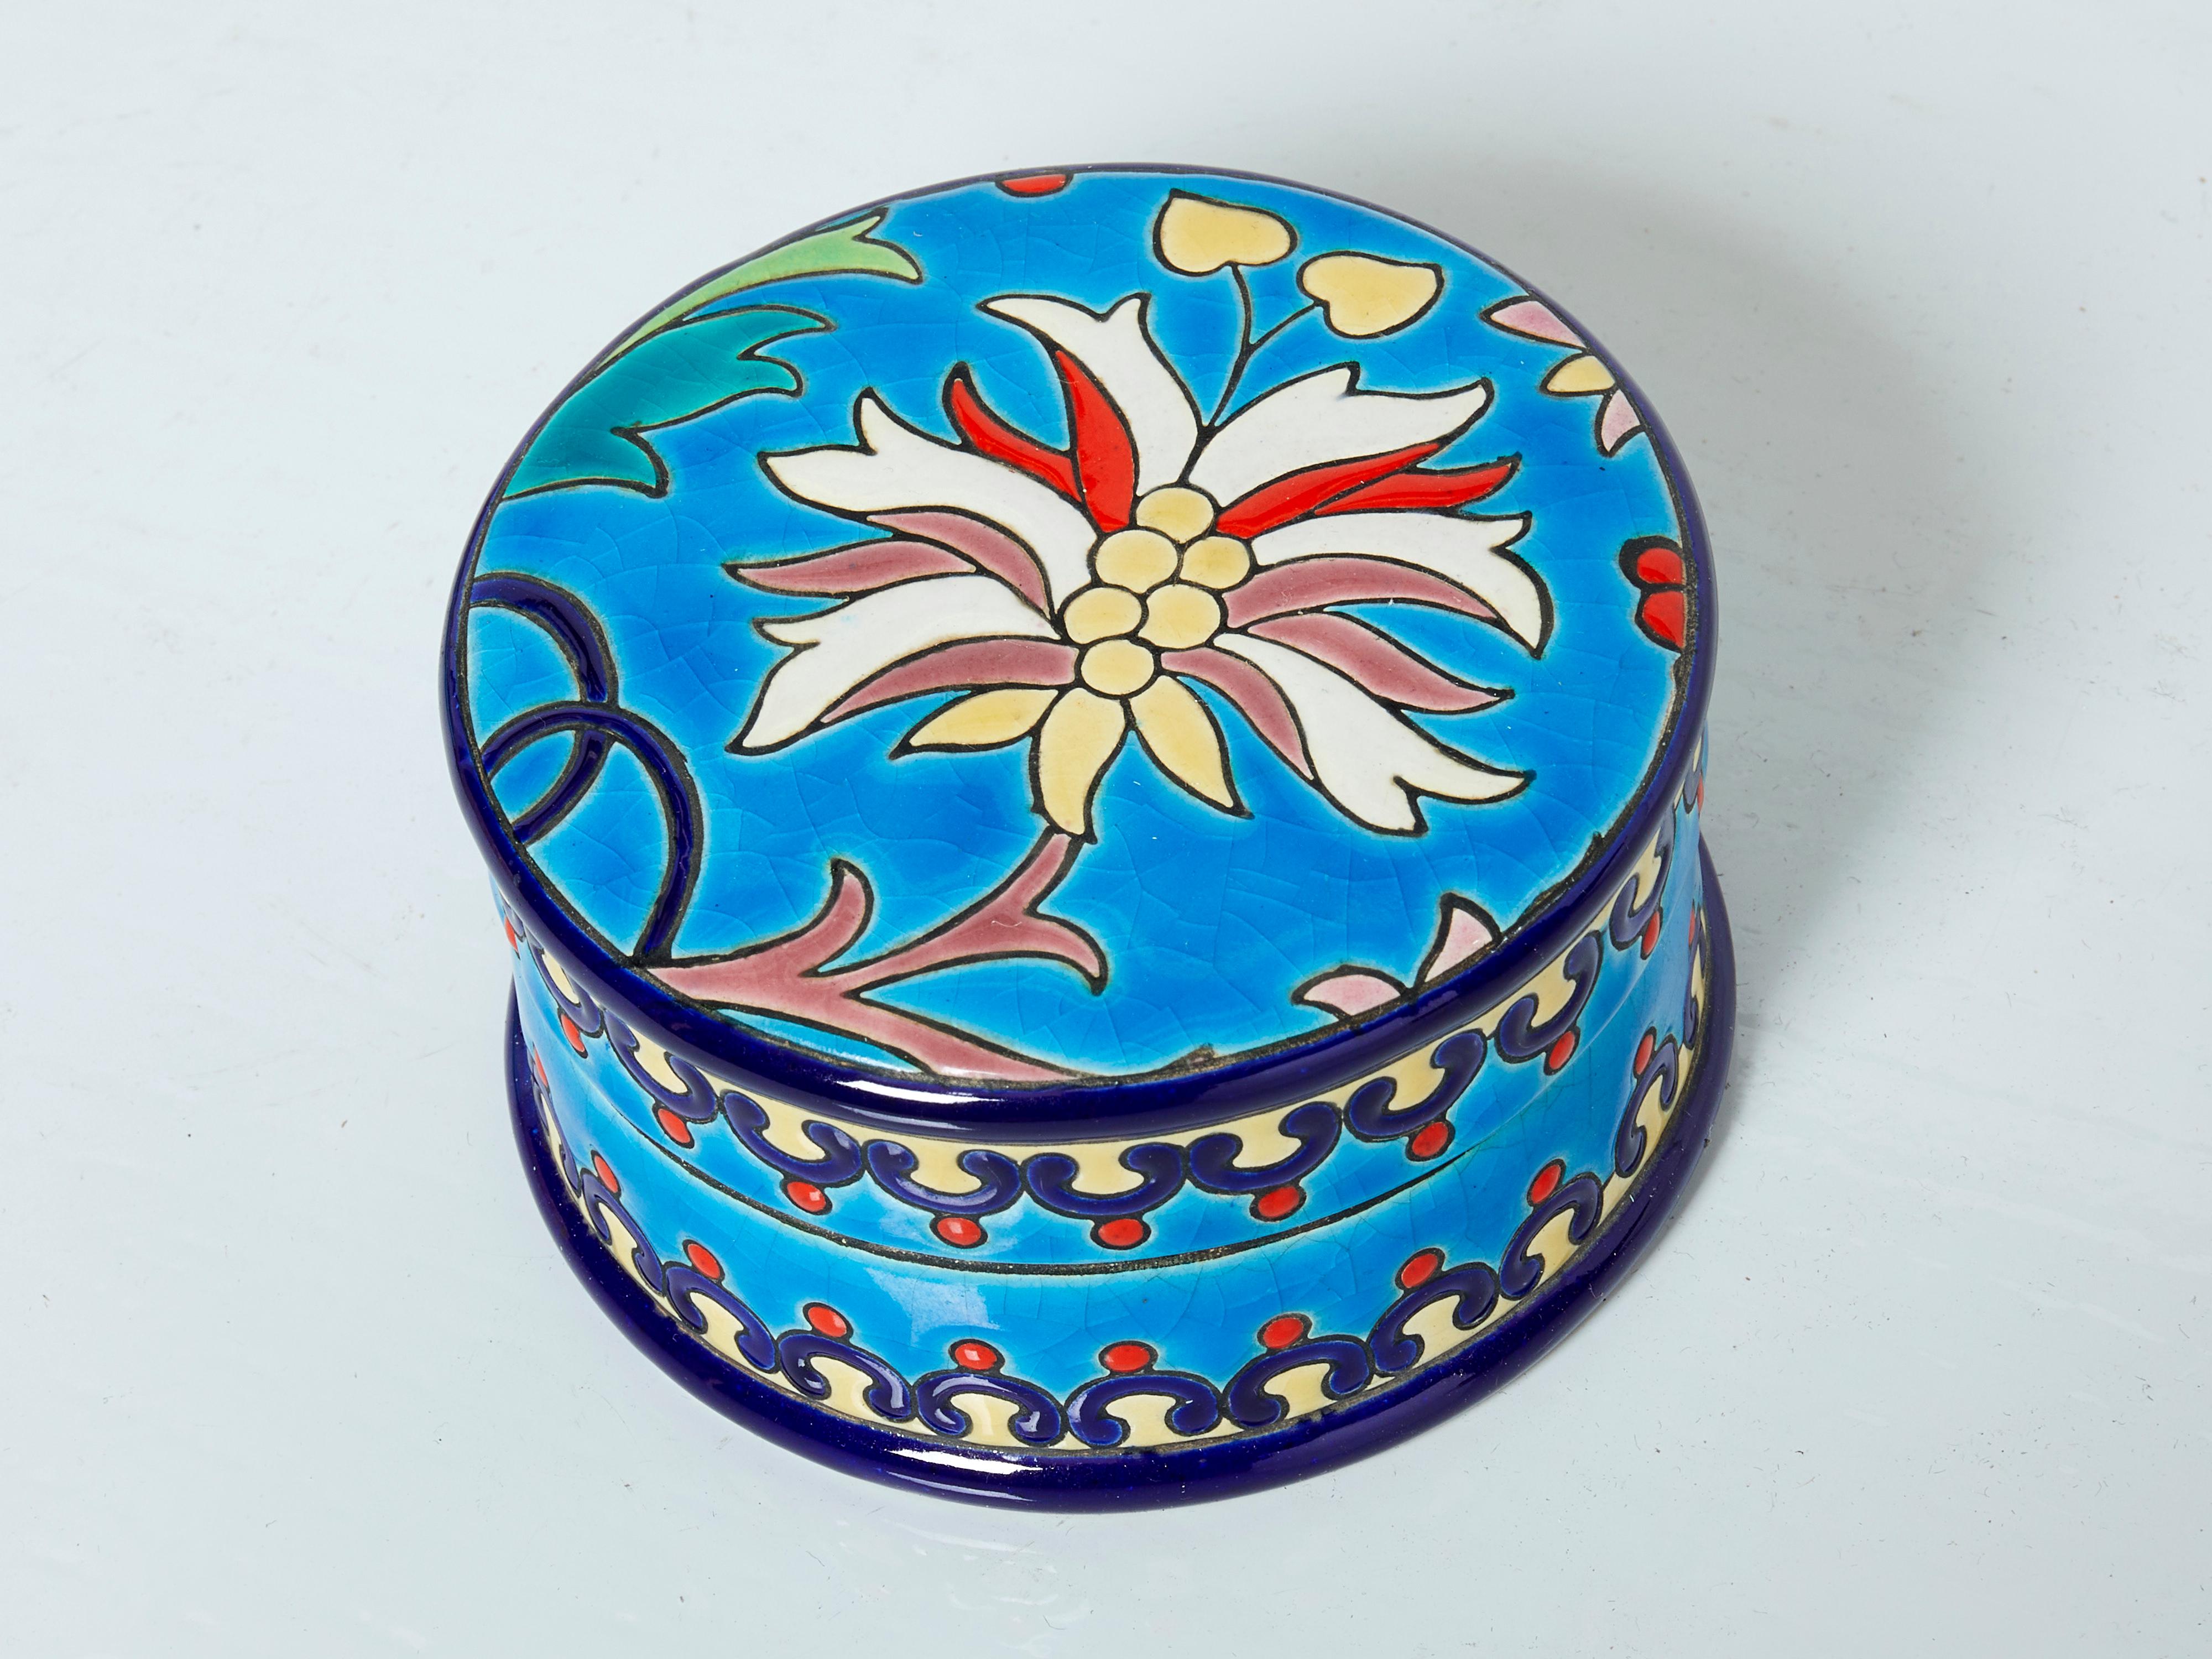 Petite boîte ronde Art déco colorée en céramique des Faïenceries et Emaux de Longwy, fabriquée vers 1940. Cette boîte bleu turquoise présente une frise colorée avec une belle fleur sur le dessus, et la glaçure craquelée signature de Longwy. La